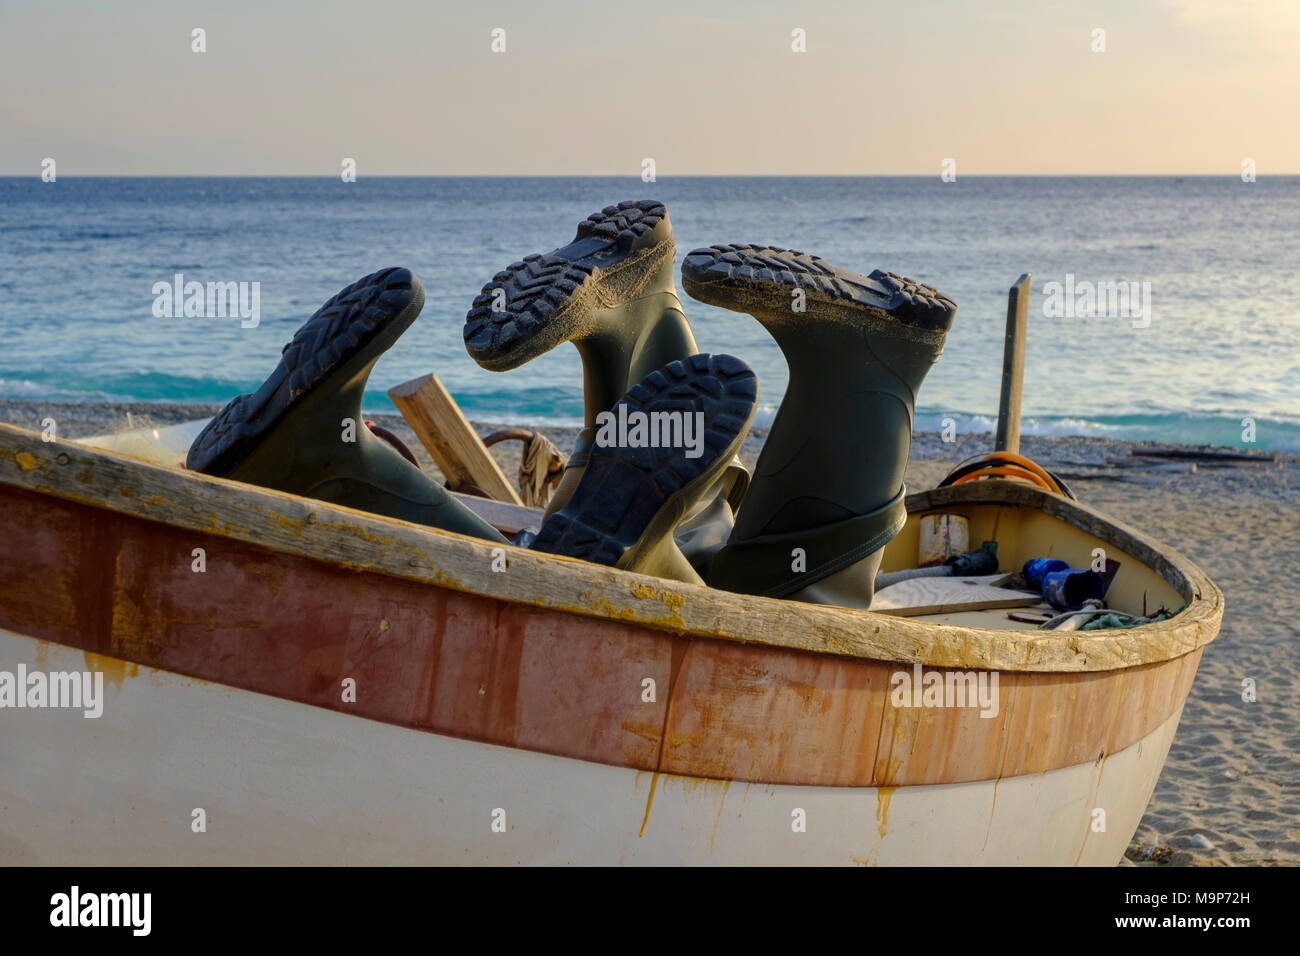 Gummistiefel in einem Fischerboot am Strand, Noli, Riviera di Ponente,  Ligurien, Italien Stockfotografie - Alamy